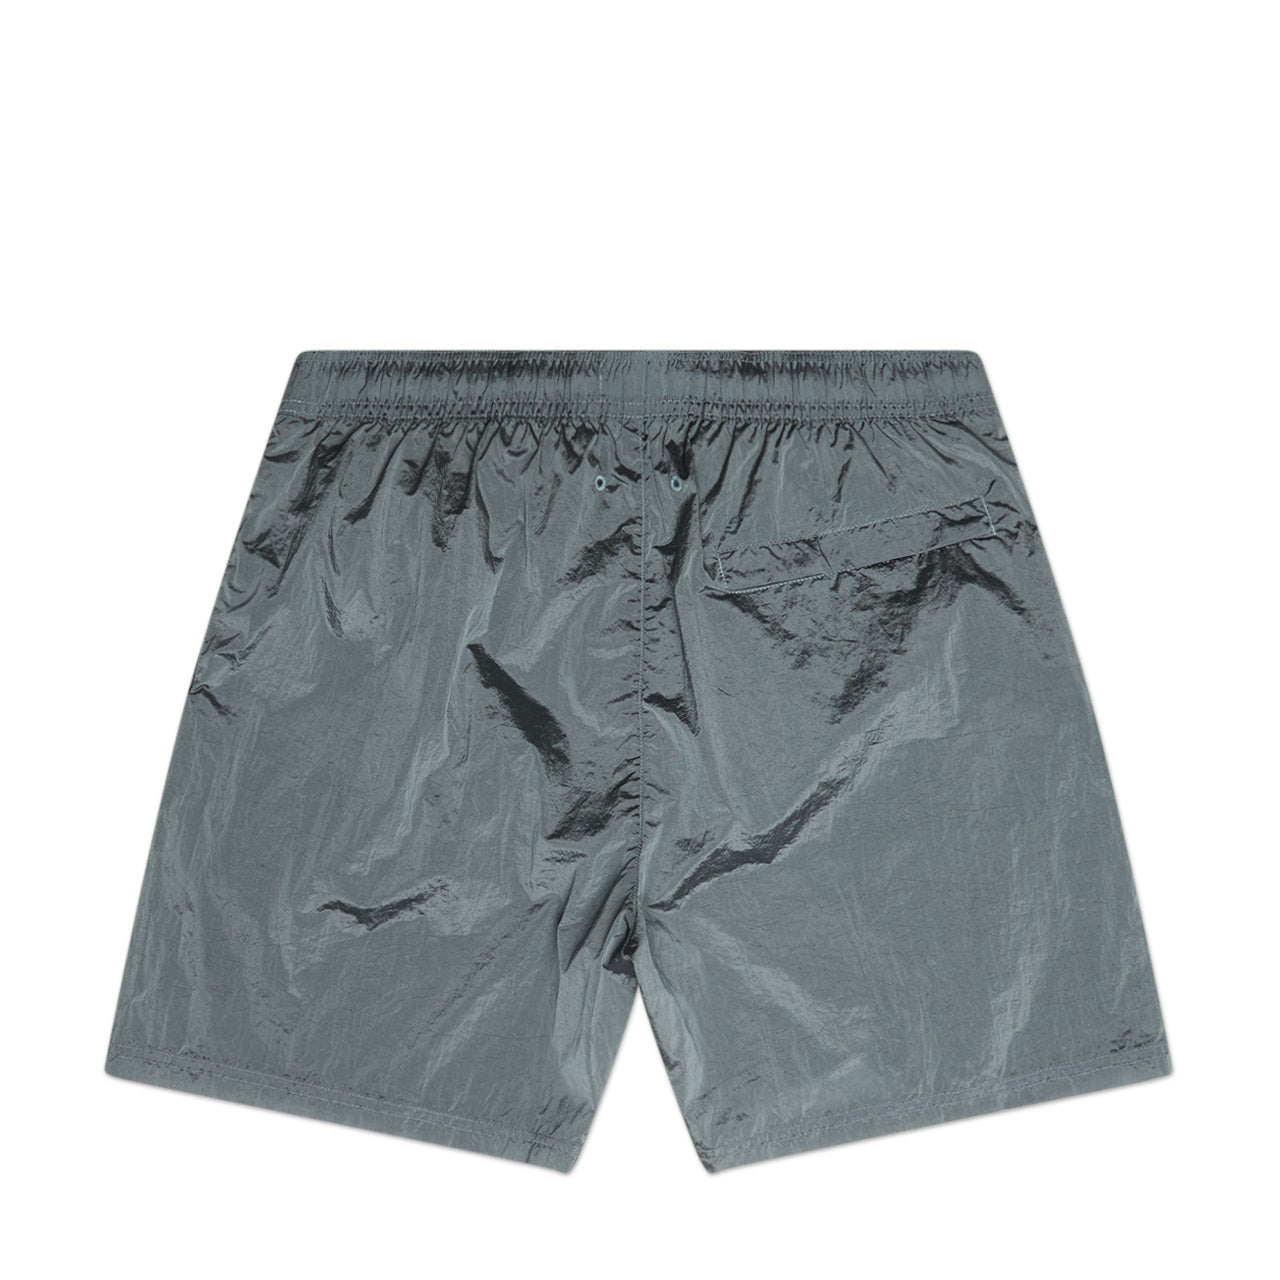 stone island shorts (himmelblau)